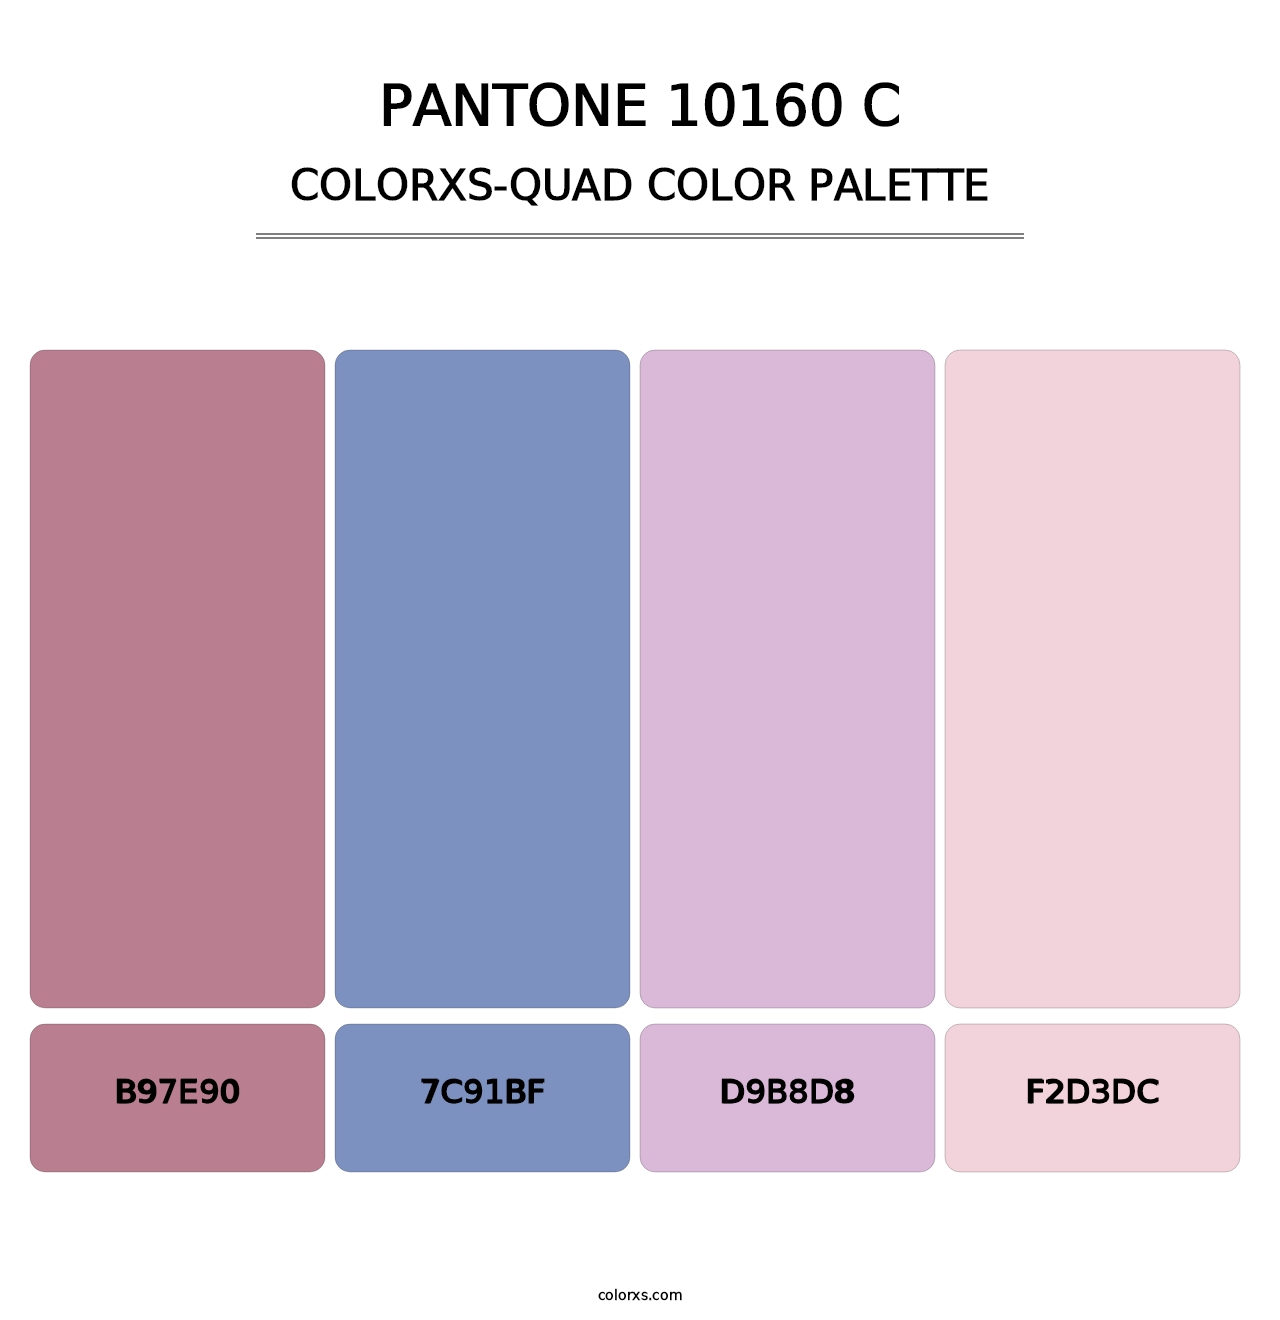 PANTONE 10160 C - Colorxs Quad Palette